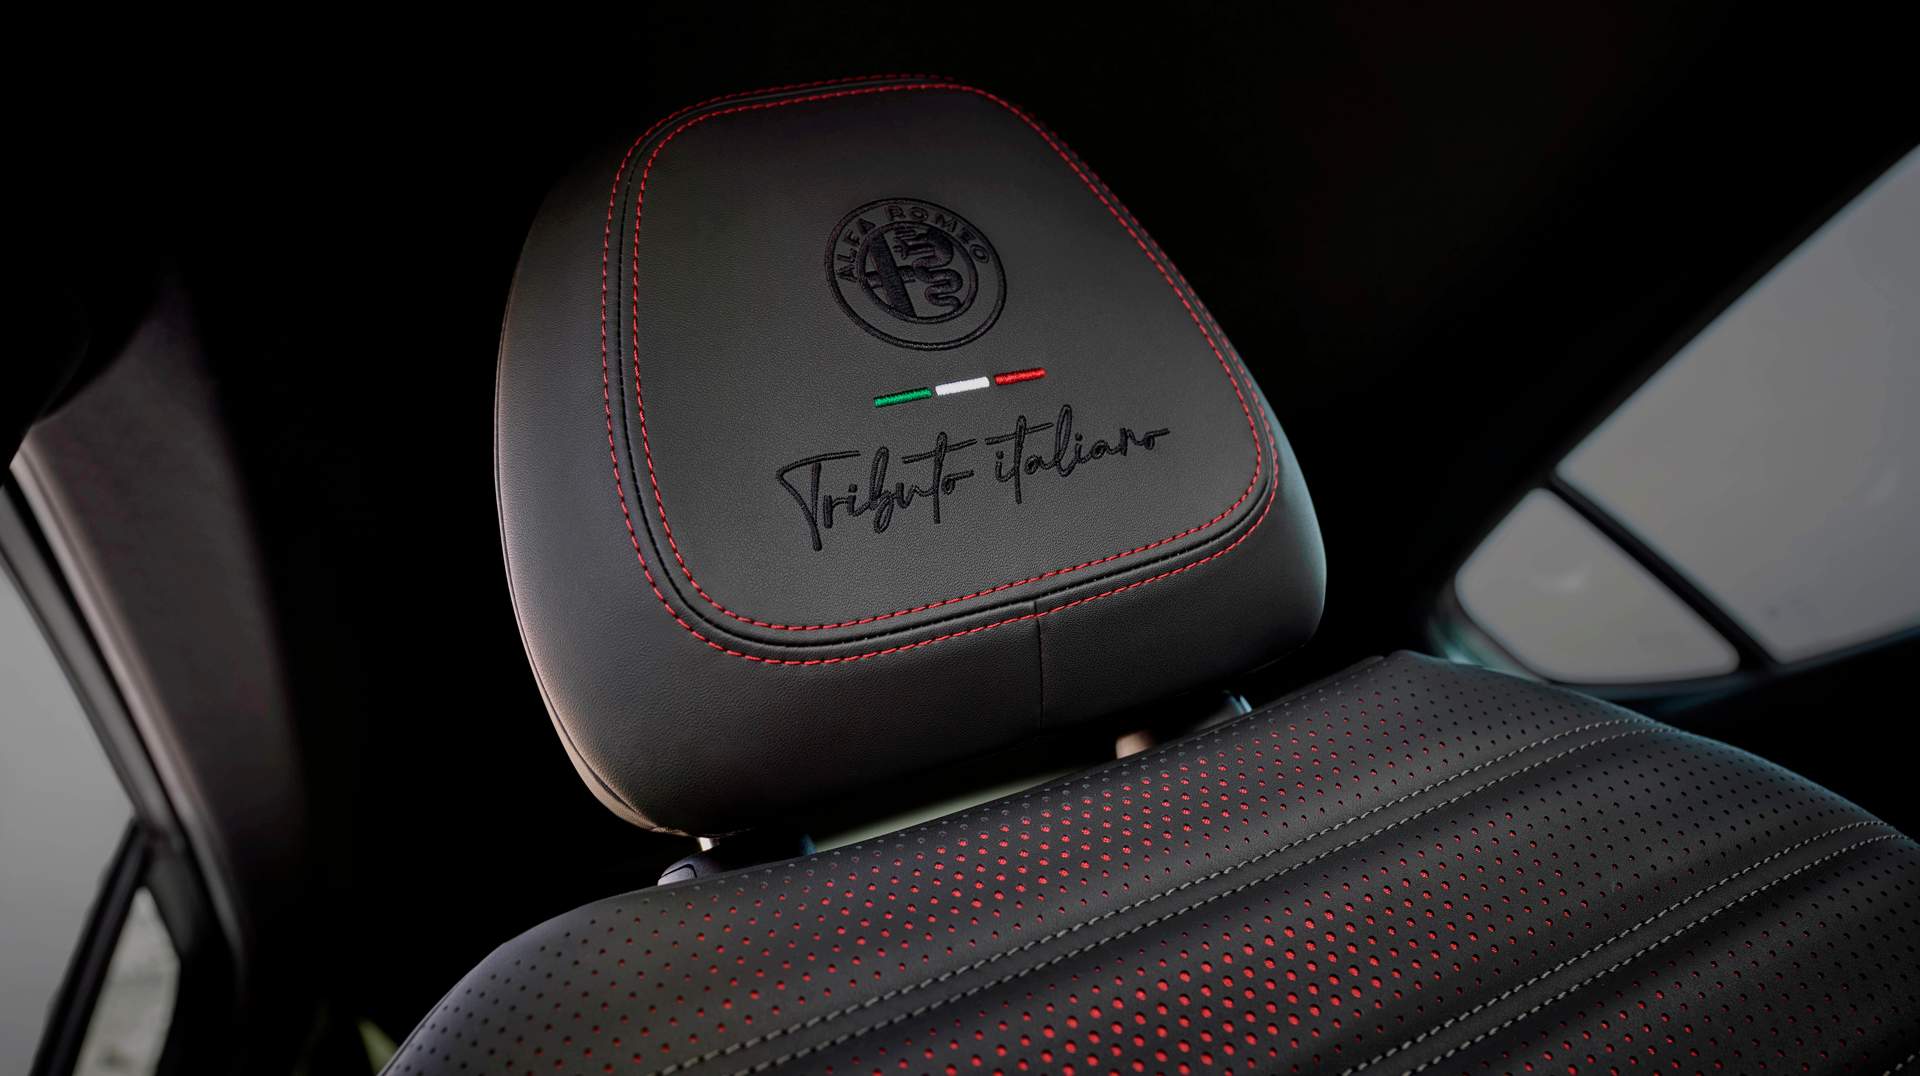 Los reposacabezas delanteros llevan bordado el logo “Tributo italiano”. A destacar los puntos rojos en los asientos de cuero negro.